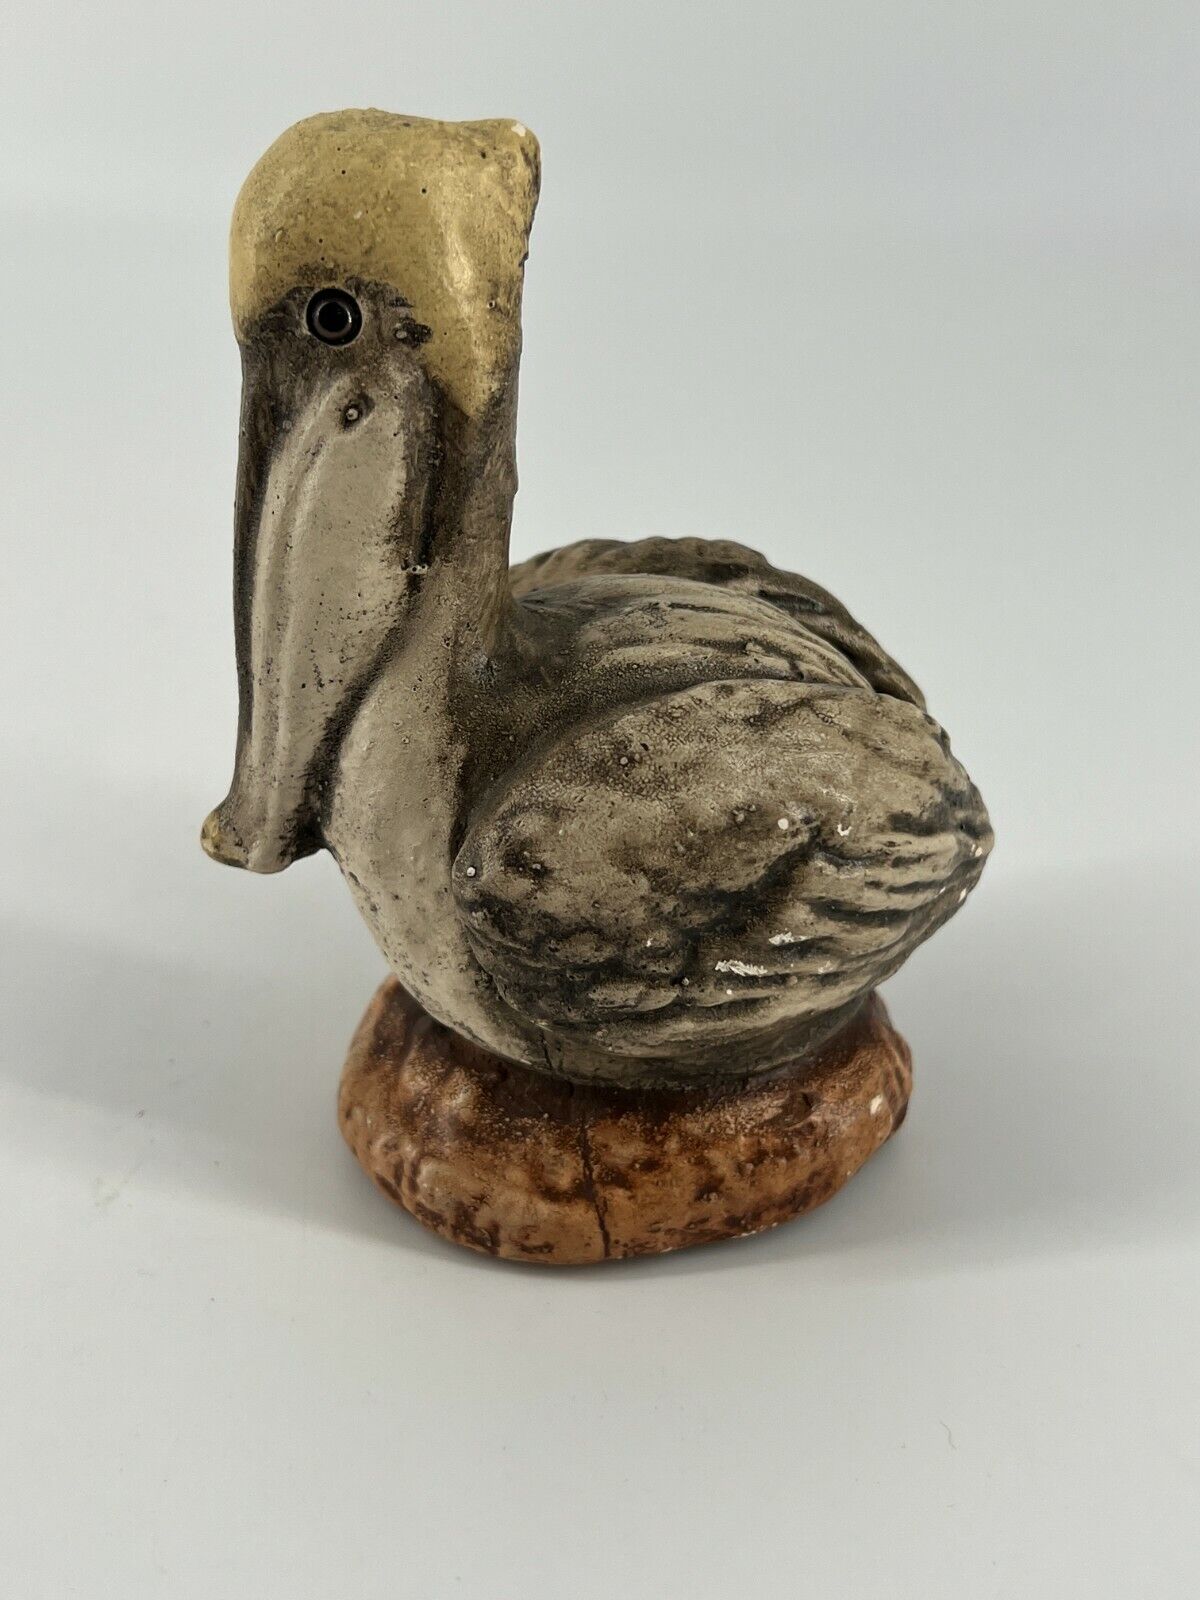  Ceramic Gray Sitting Pelican Figurine 